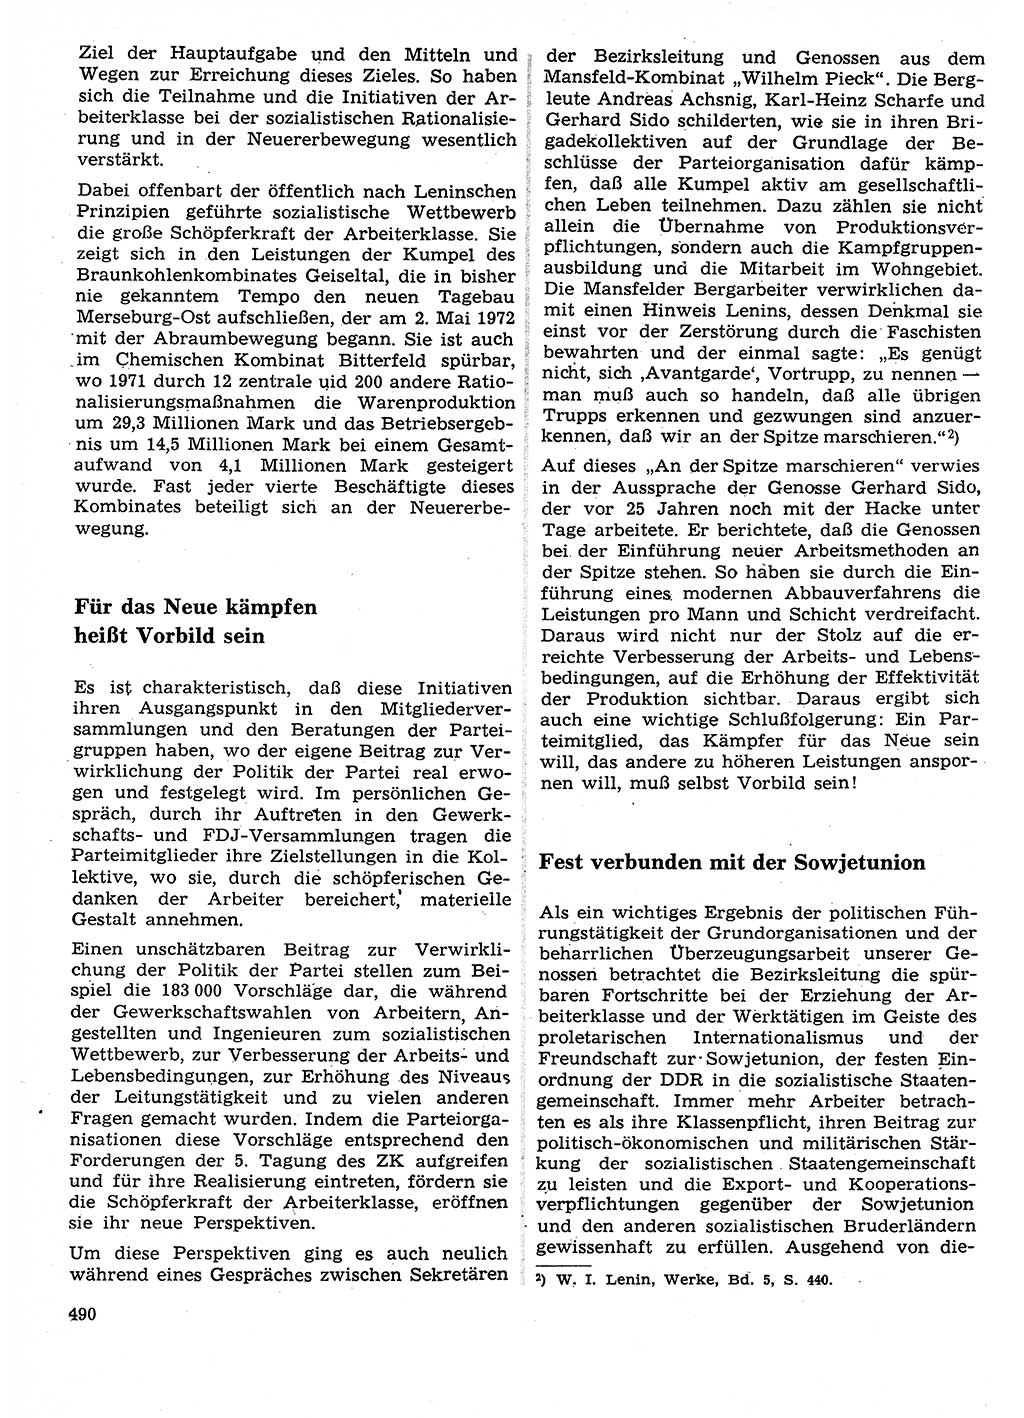 Neuer Weg (NW), Organ des Zentralkomitees (ZK) der SED (Sozialistische Einheitspartei Deutschlands) für Fragen des Parteilebens, 27. Jahrgang [Deutsche Demokratische Republik (DDR)] 1972, Seite 490 (NW ZK SED DDR 1972, S. 490)